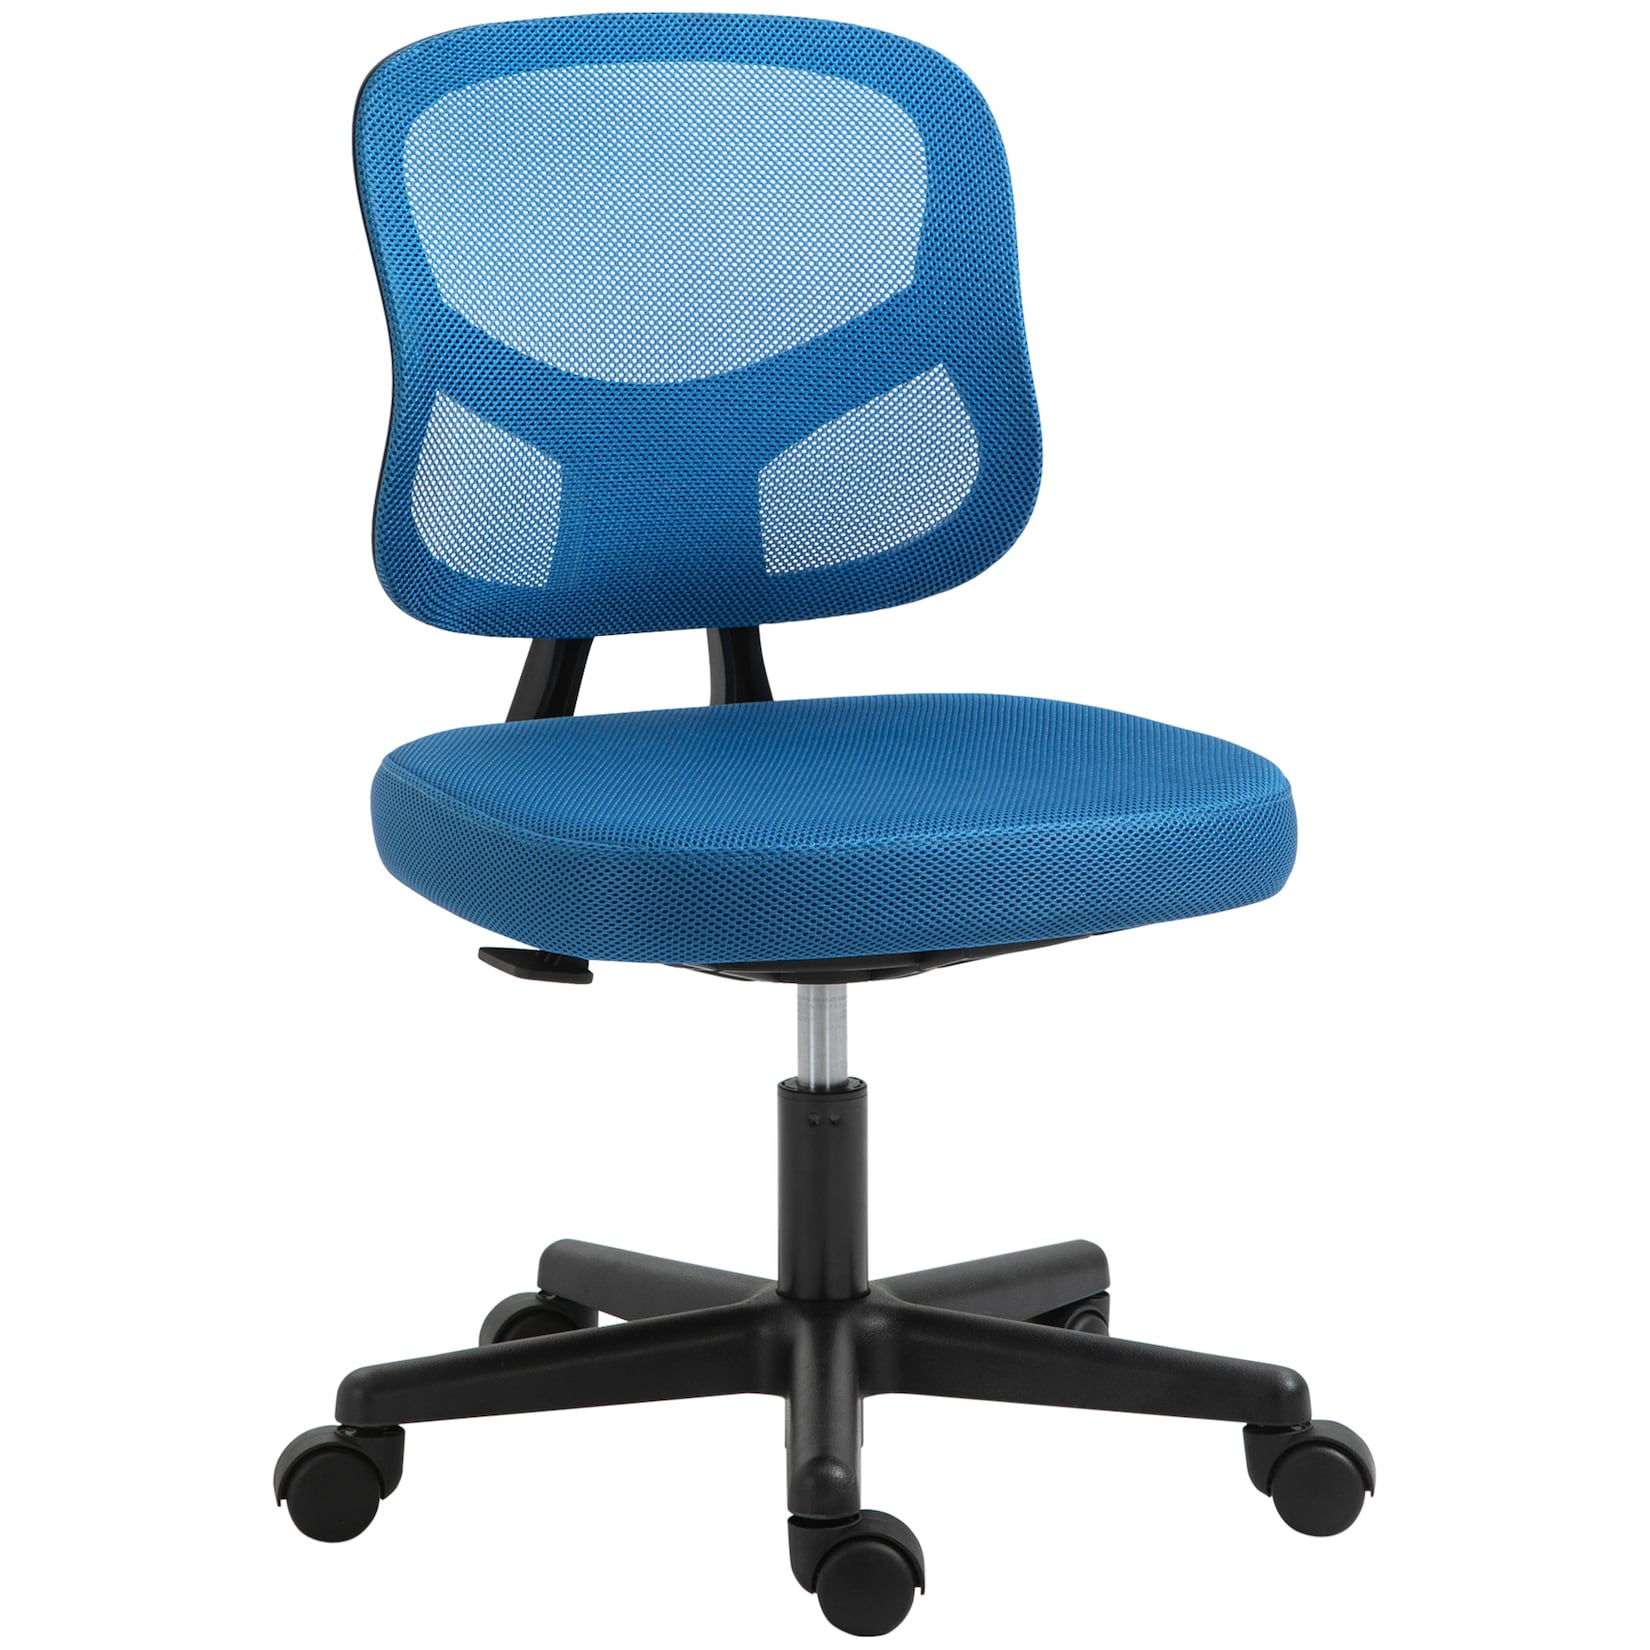 Vinsetto Bürostuhl mit Rückenlehne blau 52B x 54T x 74-84H cm   bürostuhl mit rückenlehne  stuhl mit rollen  für büro und wohnzimmer